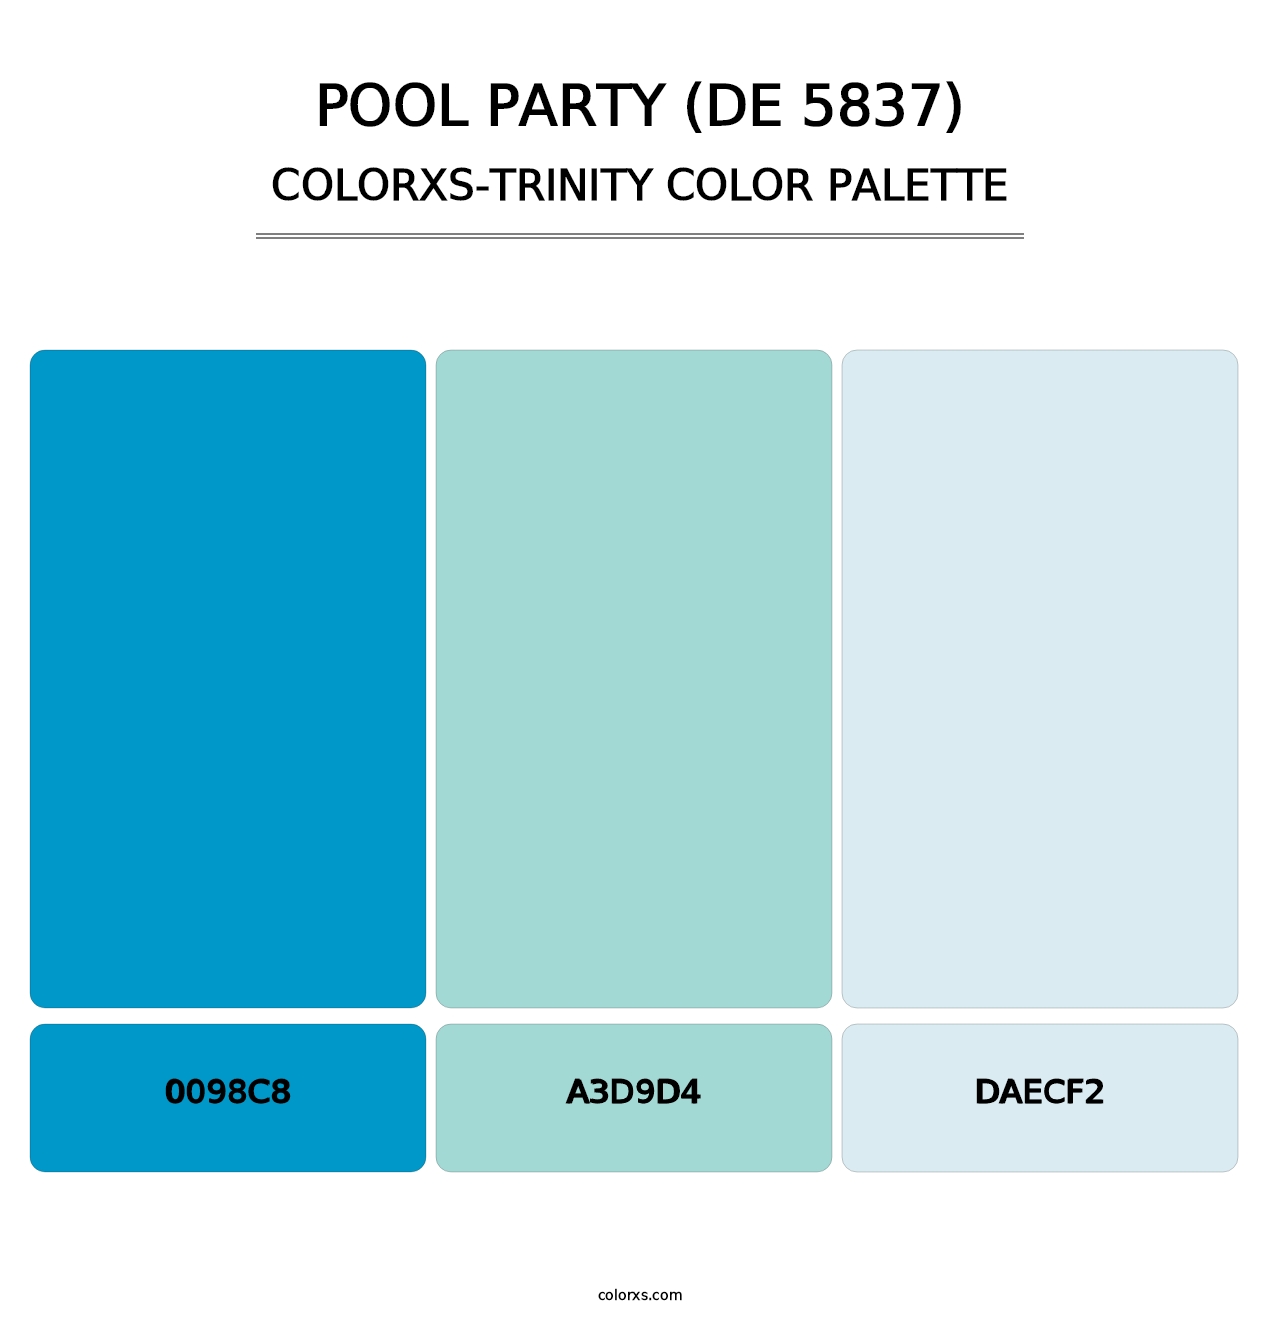 Pool Party (DE 5837) - Colorxs Trinity Palette